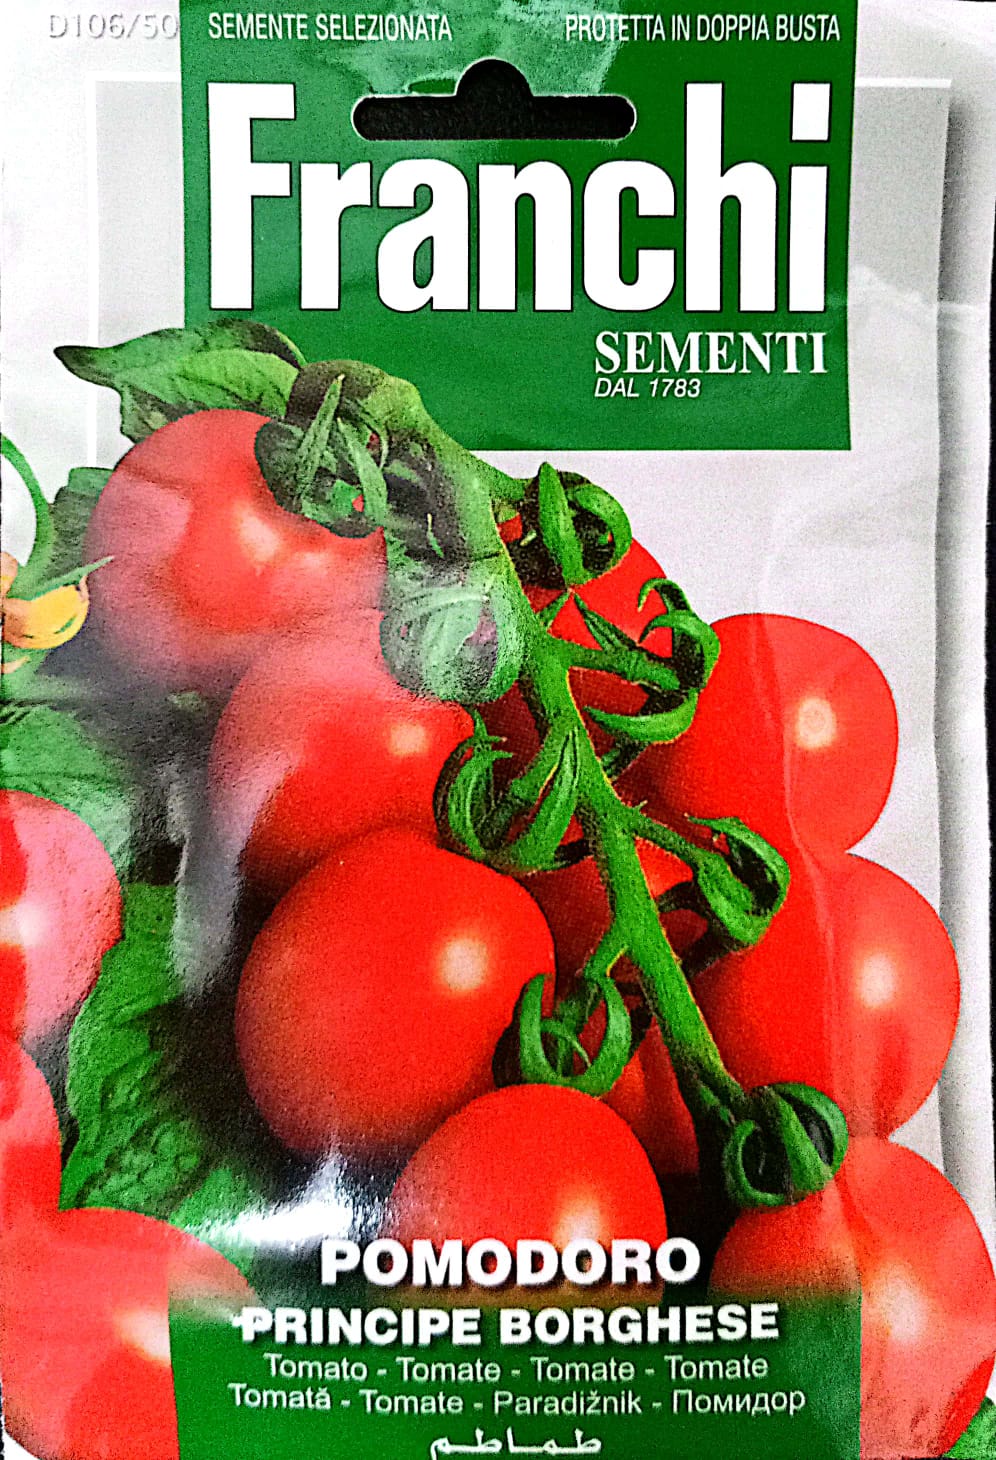 Franchi Principe Borghese Tomato